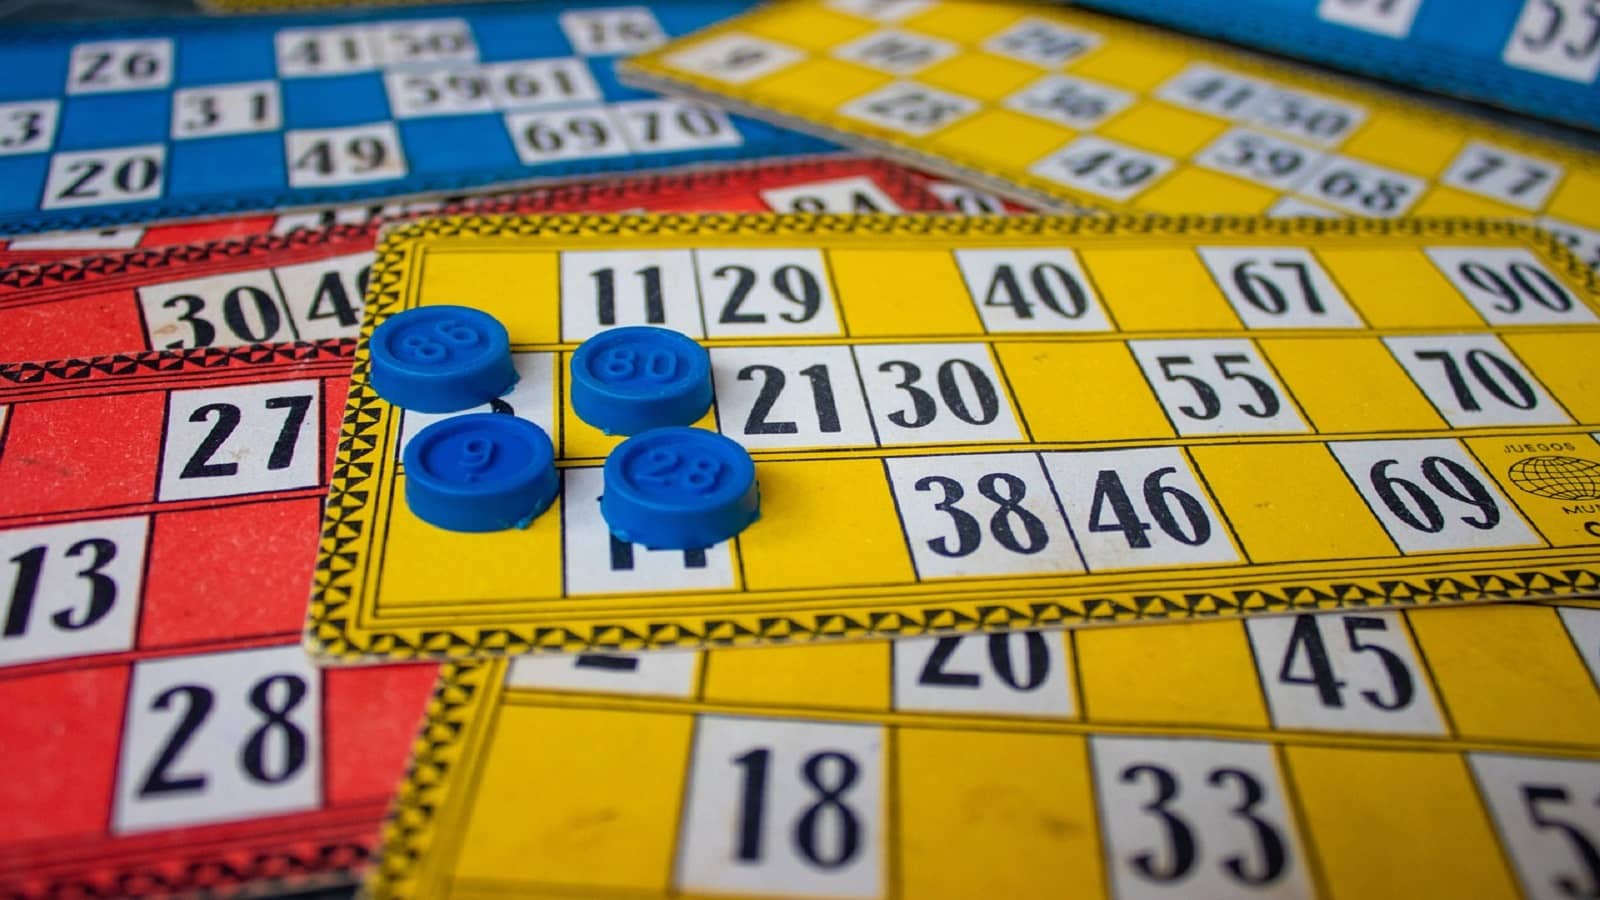 różnokolorowe plansze do gry Bingo wraz ze stempelkami do zaznaczania liczb